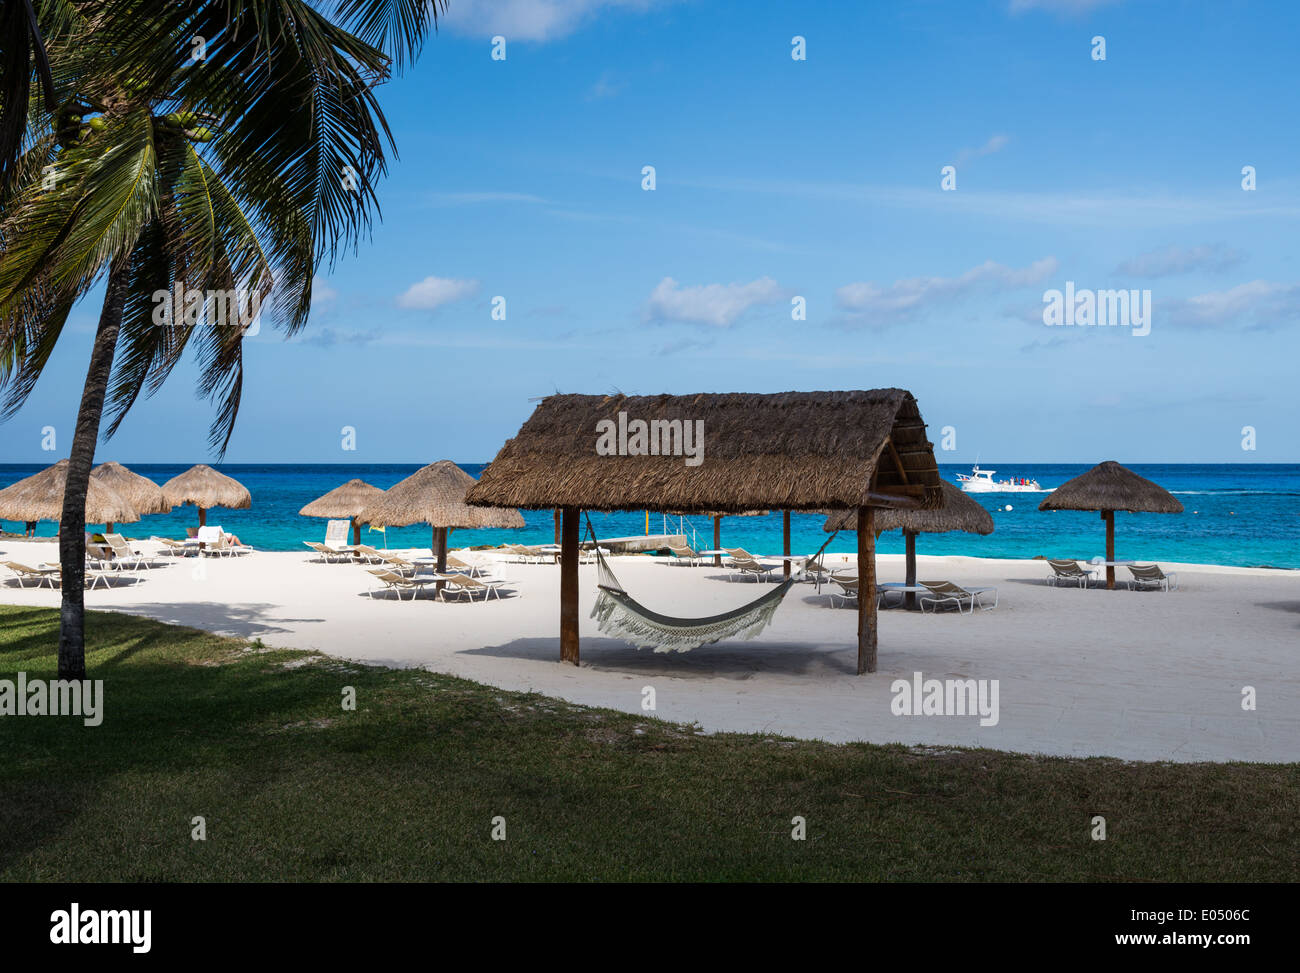 Strohgedeckte Hütte und Sonnenschirme verstreut auf einem Beach Resort. Cozumel, Mexiko. Stockfoto